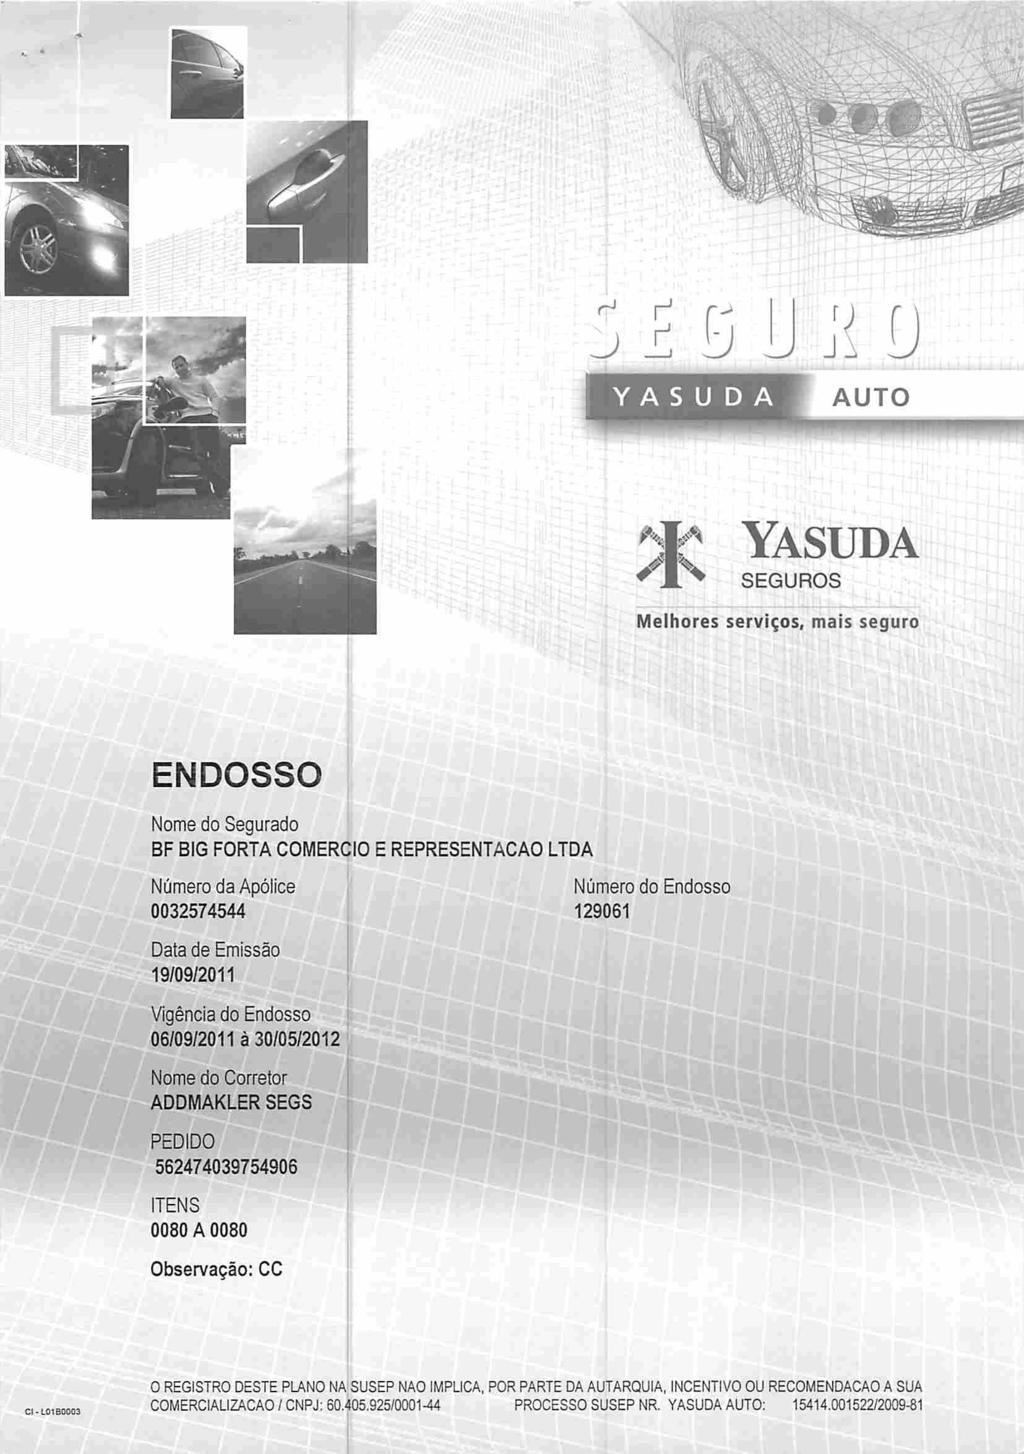 J ^ ^ Ü YASUDA AUTO SEGUROS Melhores serviços, mais seguro ENDOSSO Nome do Segurado Número da Apólice 0032574544 Número do Data de Emissão 19/09/2011 Vigência do 06/09/2011 à 30/05/2012 Nome do